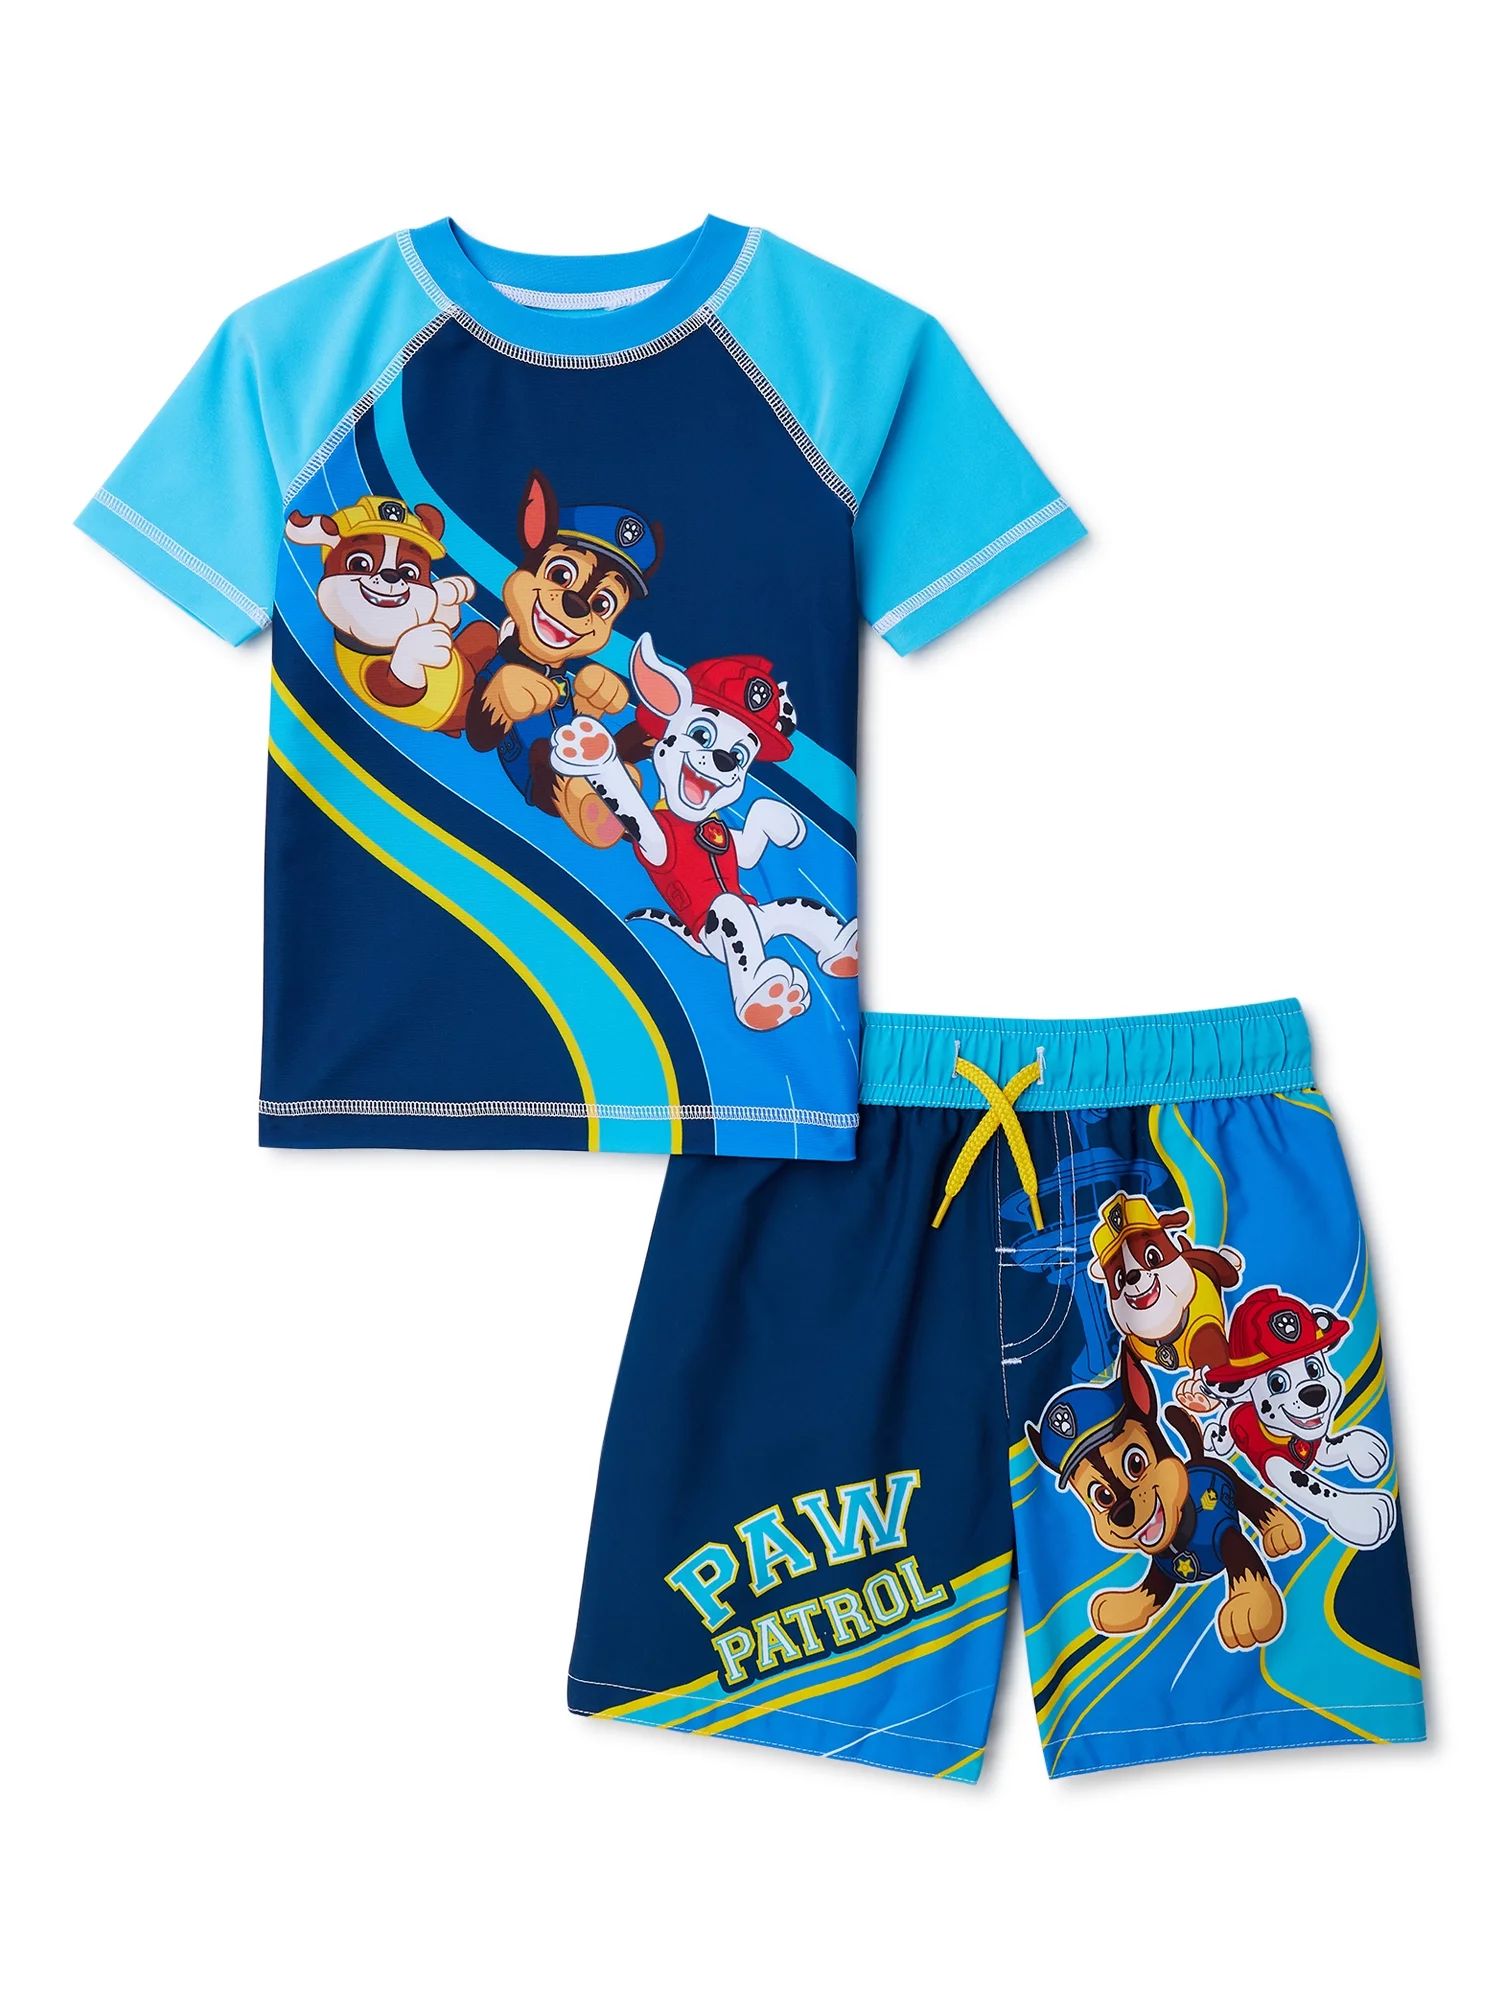 Paw Patrol Toddler Boy Rash Guard and Trunks, UPF 50+, 2-Piece Swim Sizes 2T-4T | Walmart (US)